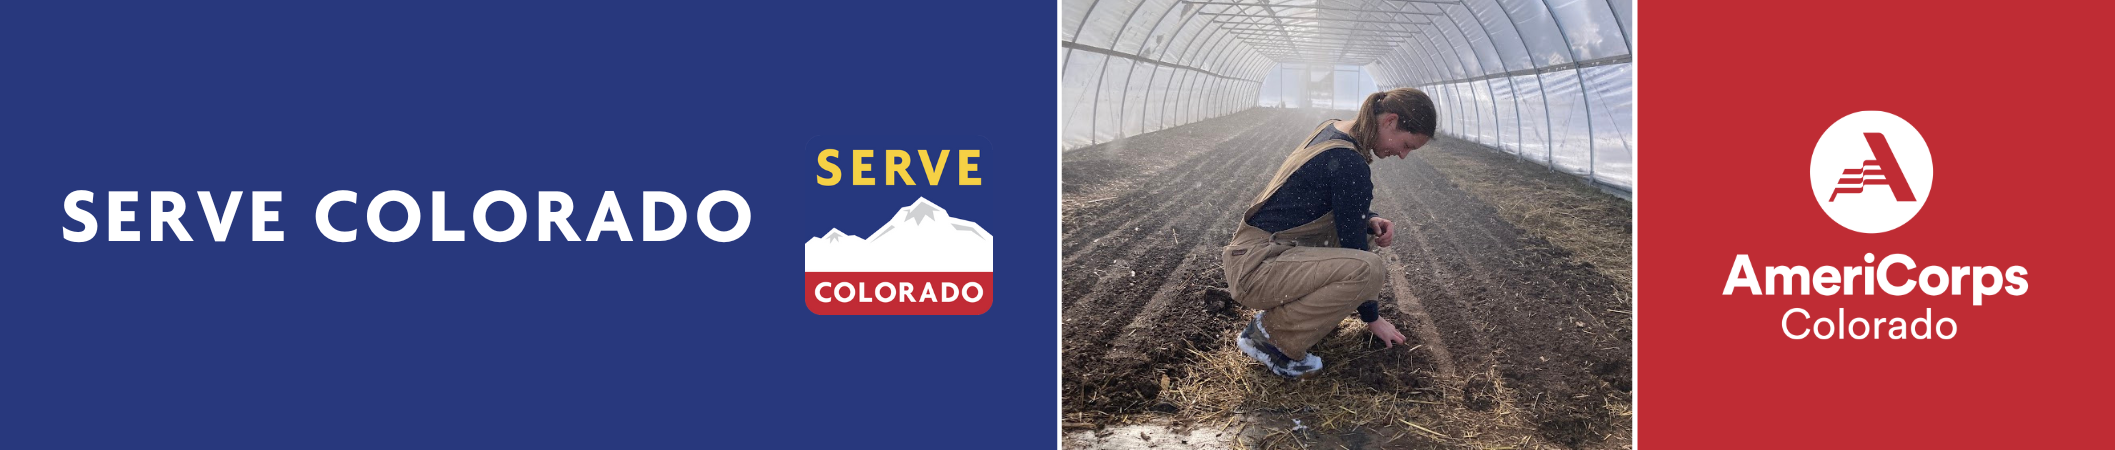 Serve Colorado Banner